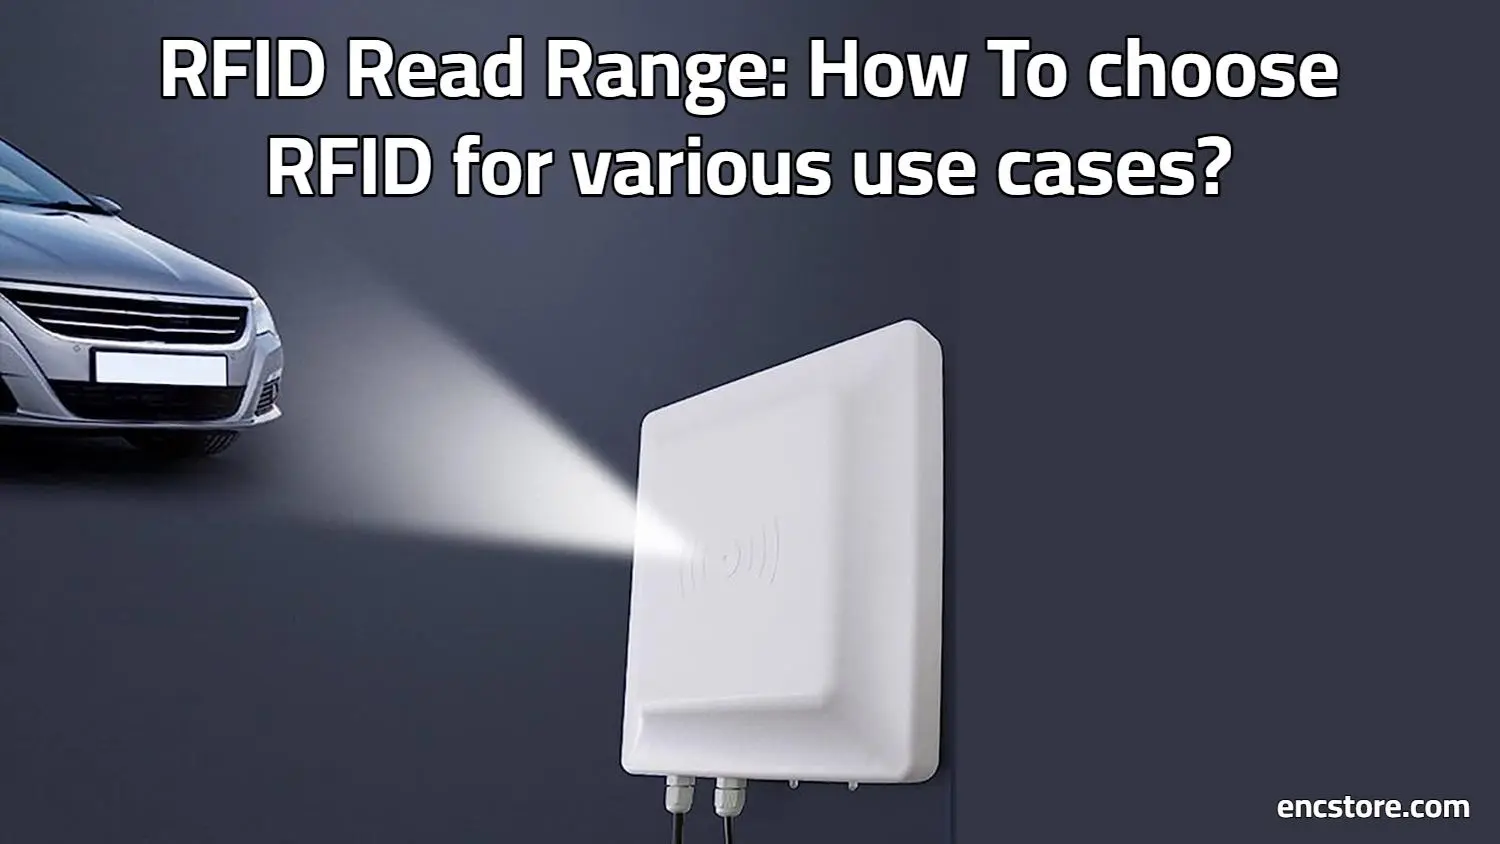 RFID Read Range